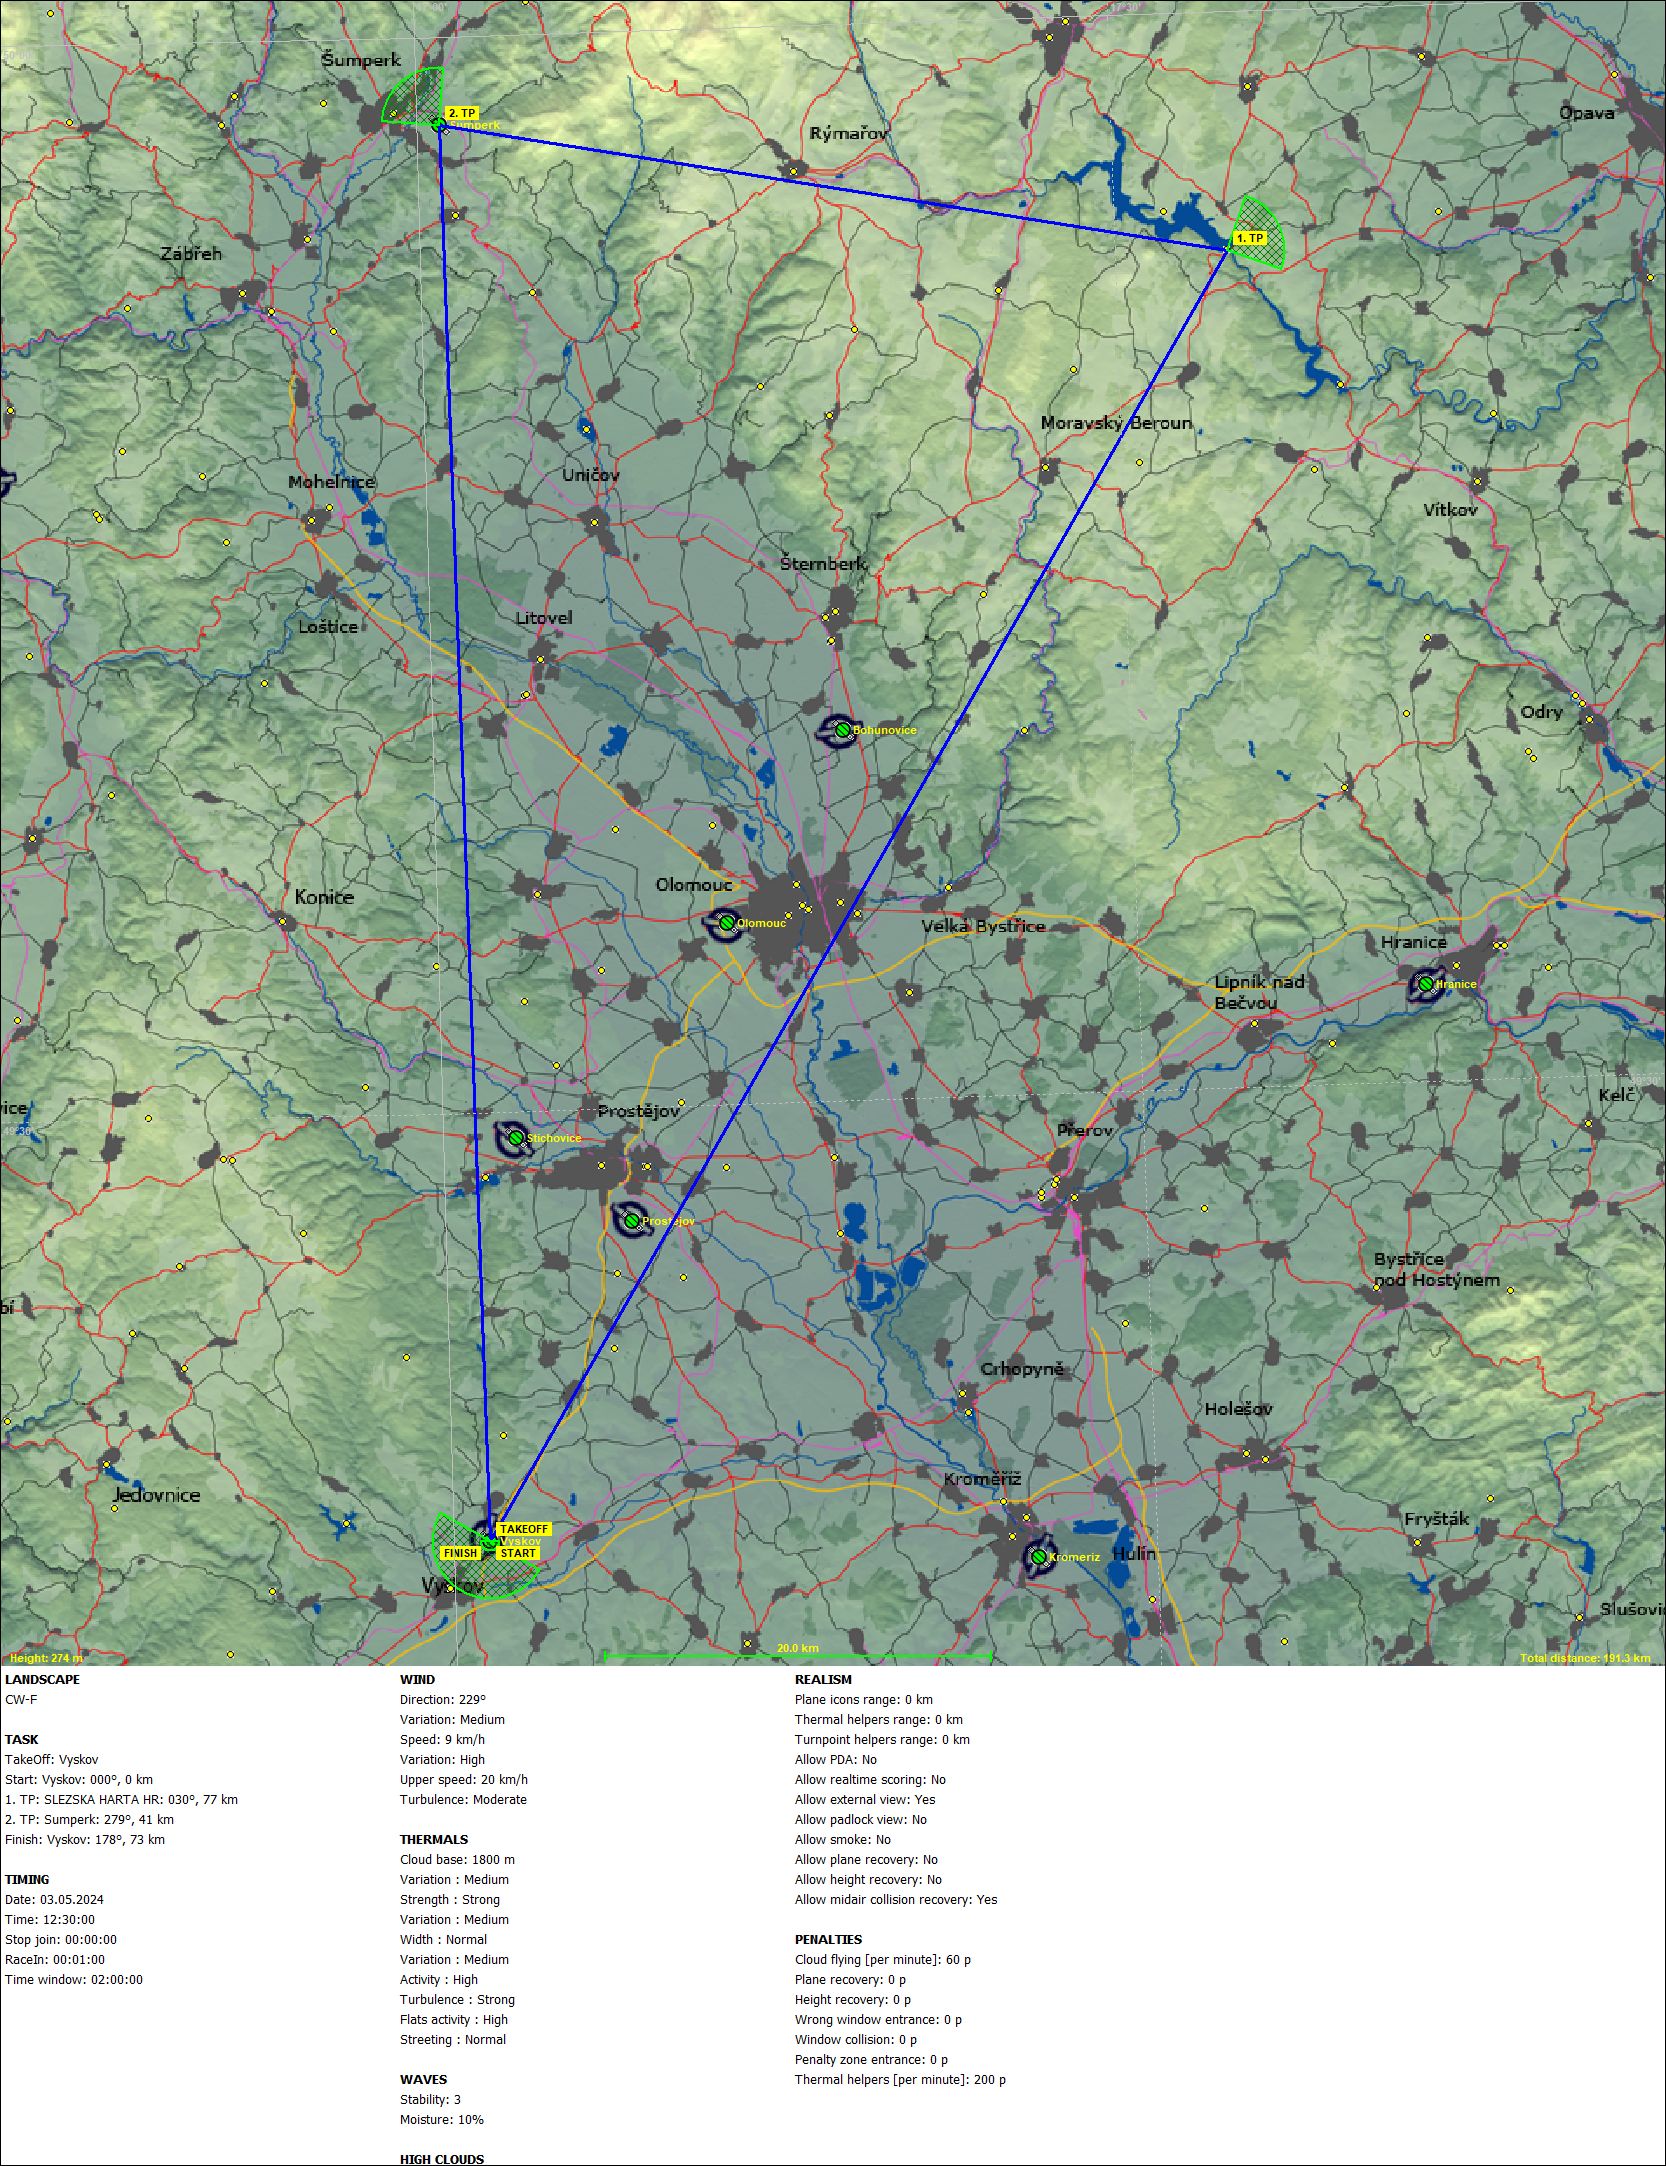 [C2] Batoh! noPDA Briefing Map